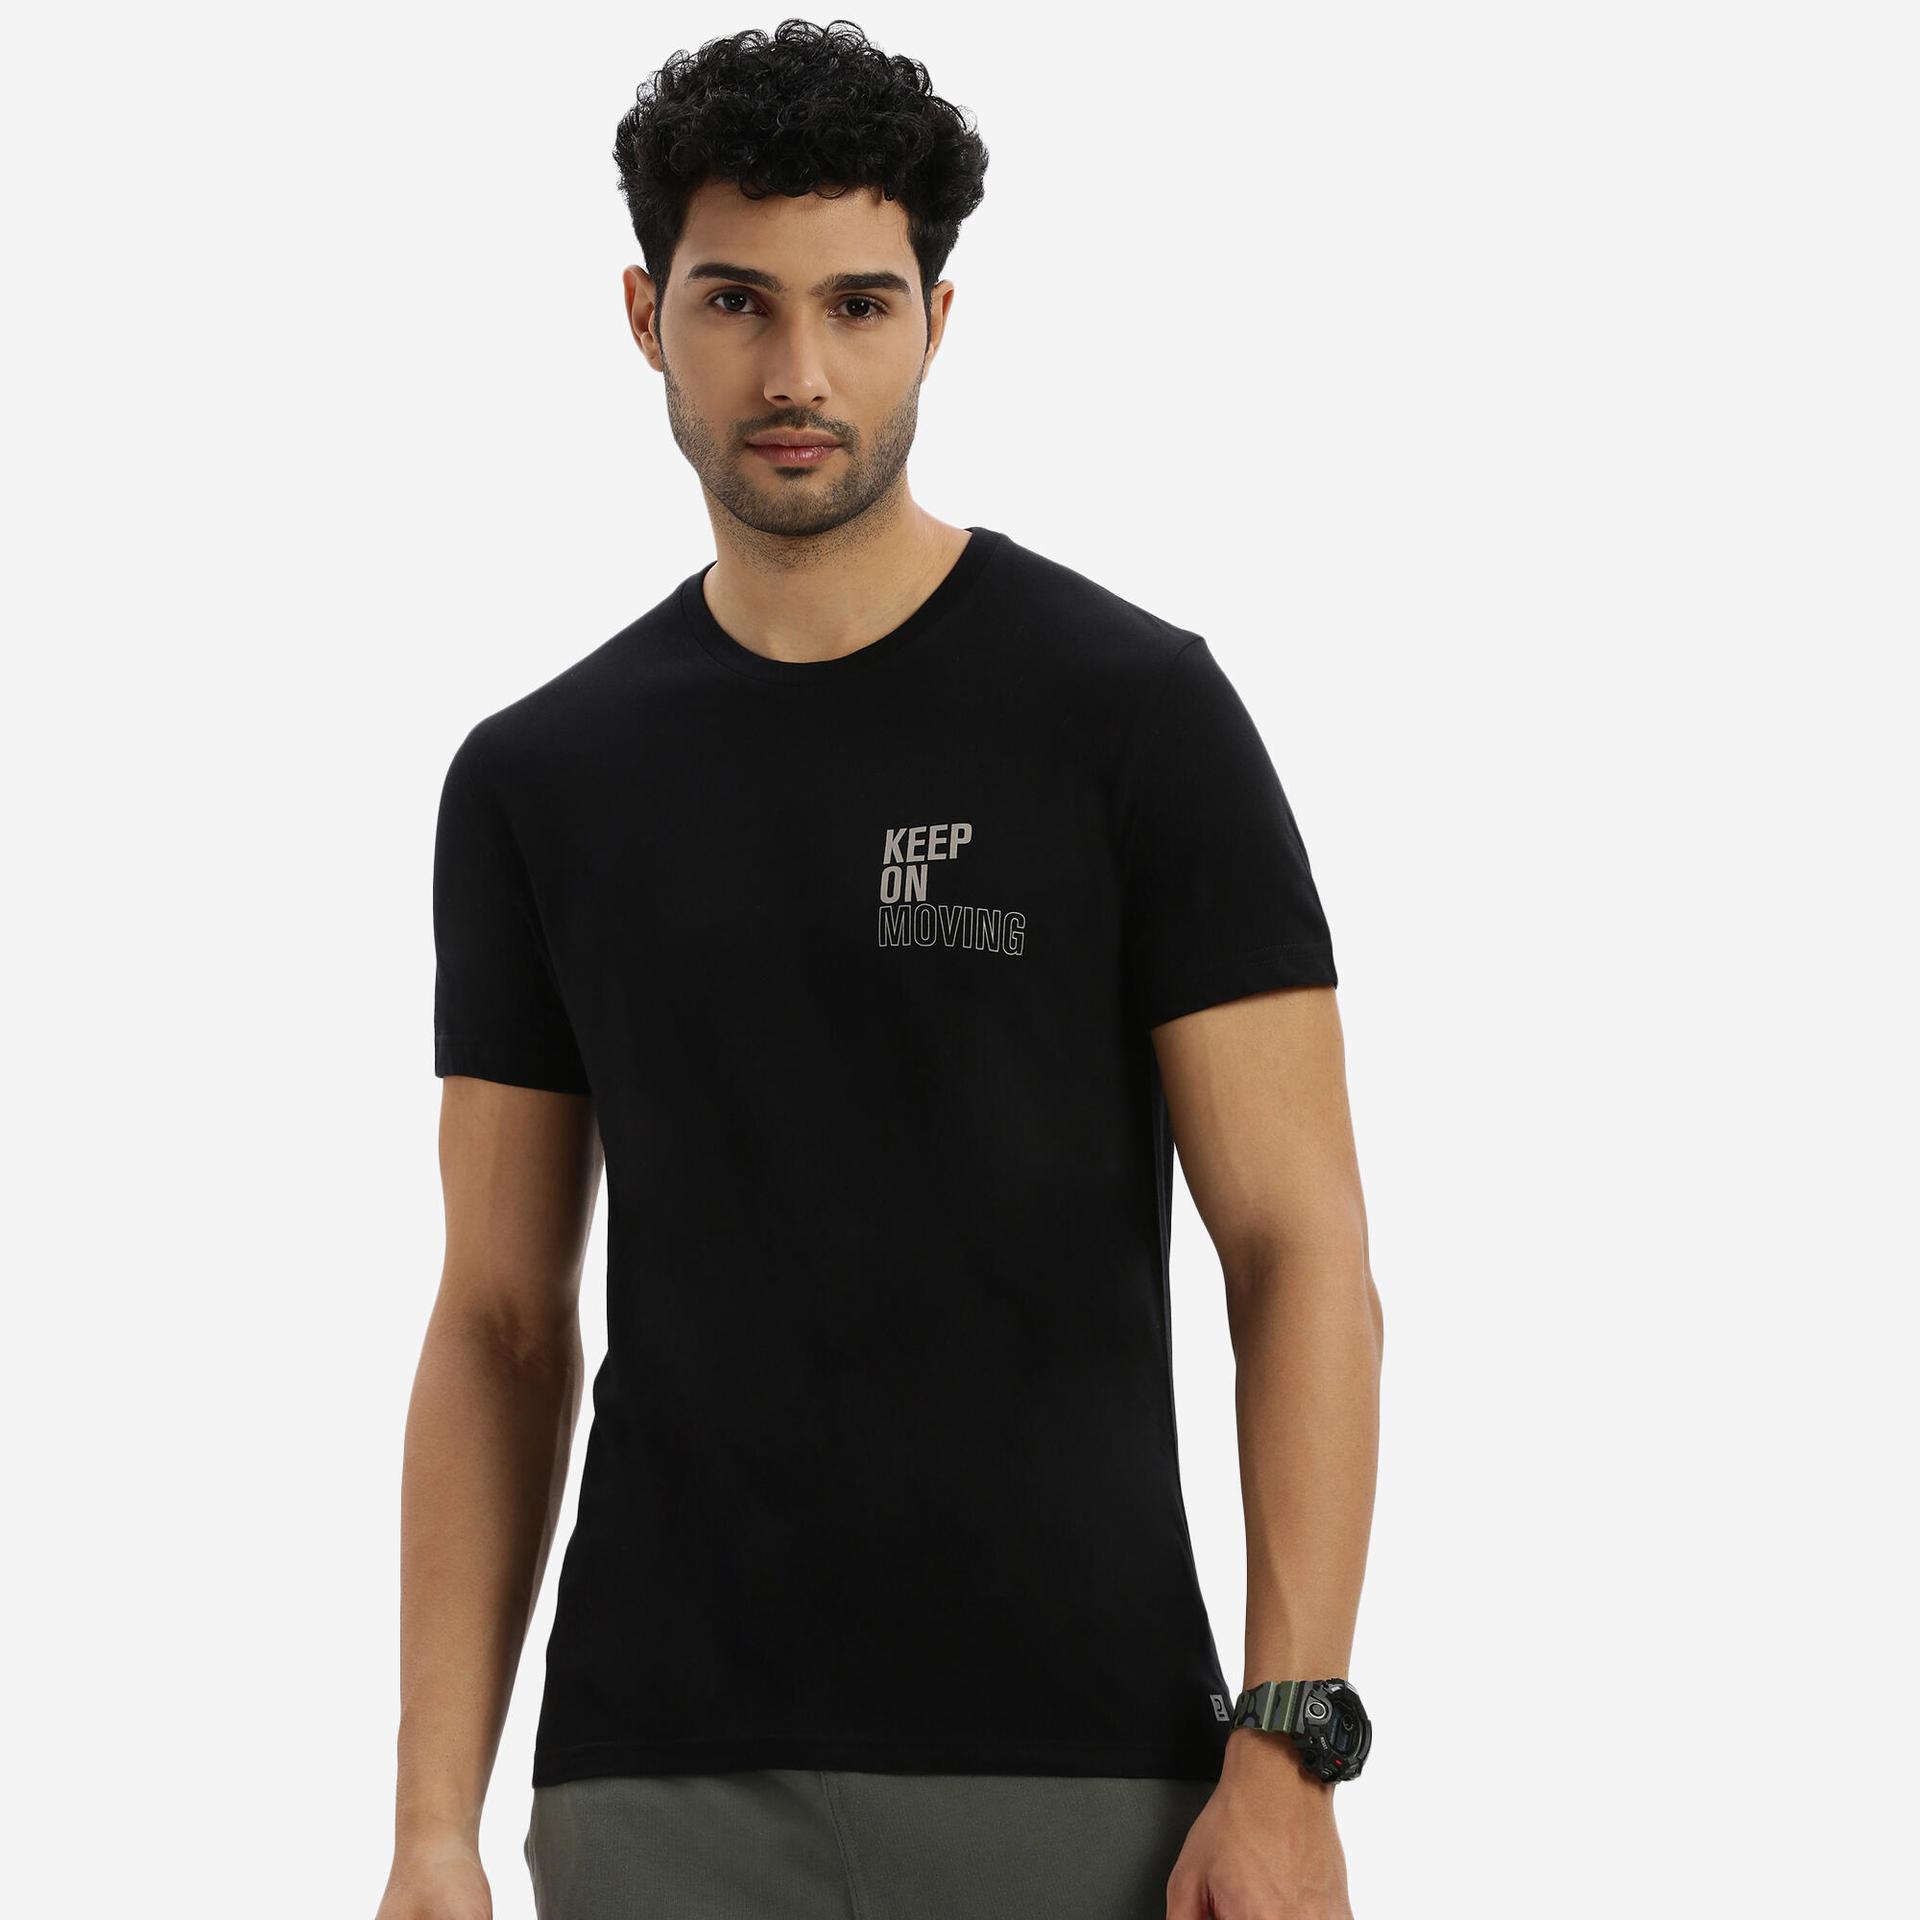 Men Tshirt Printed for Gym-Black